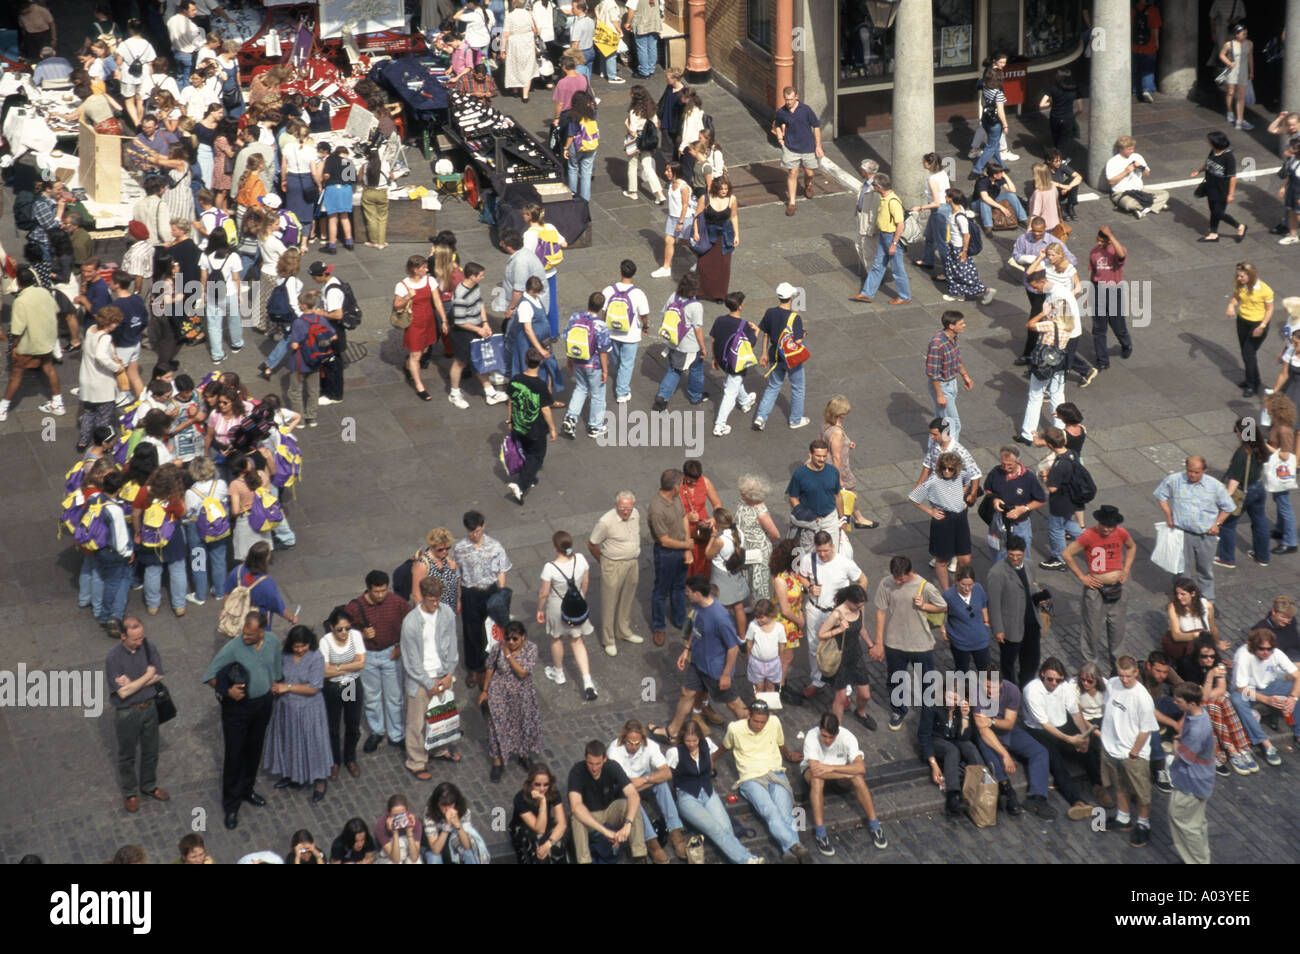 Vue aérienne d'été de Covent Garden foule de personnes venant de haut groupe assis regardant des groupes de divertissement faire du shopping dans les stands de marché Londres Angleterre Royaume-Uni Banque D'Images